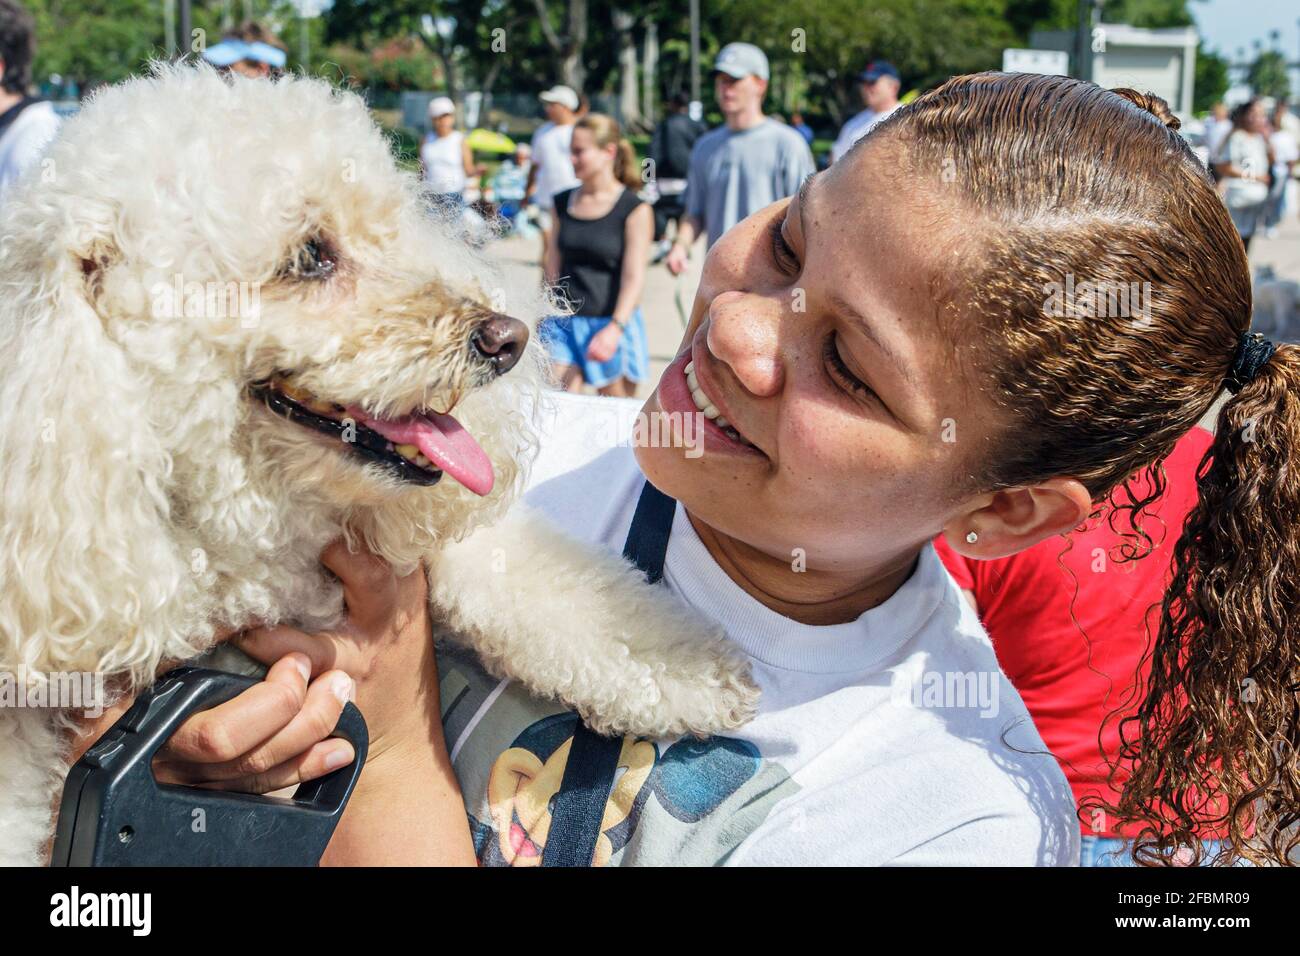 Miami Florida, Bayfront Park Walk for the Animals, humane società di raccolta di cani evento, ragazza nera femmina capretto studente volontario hugging holding dog, Foto Stock